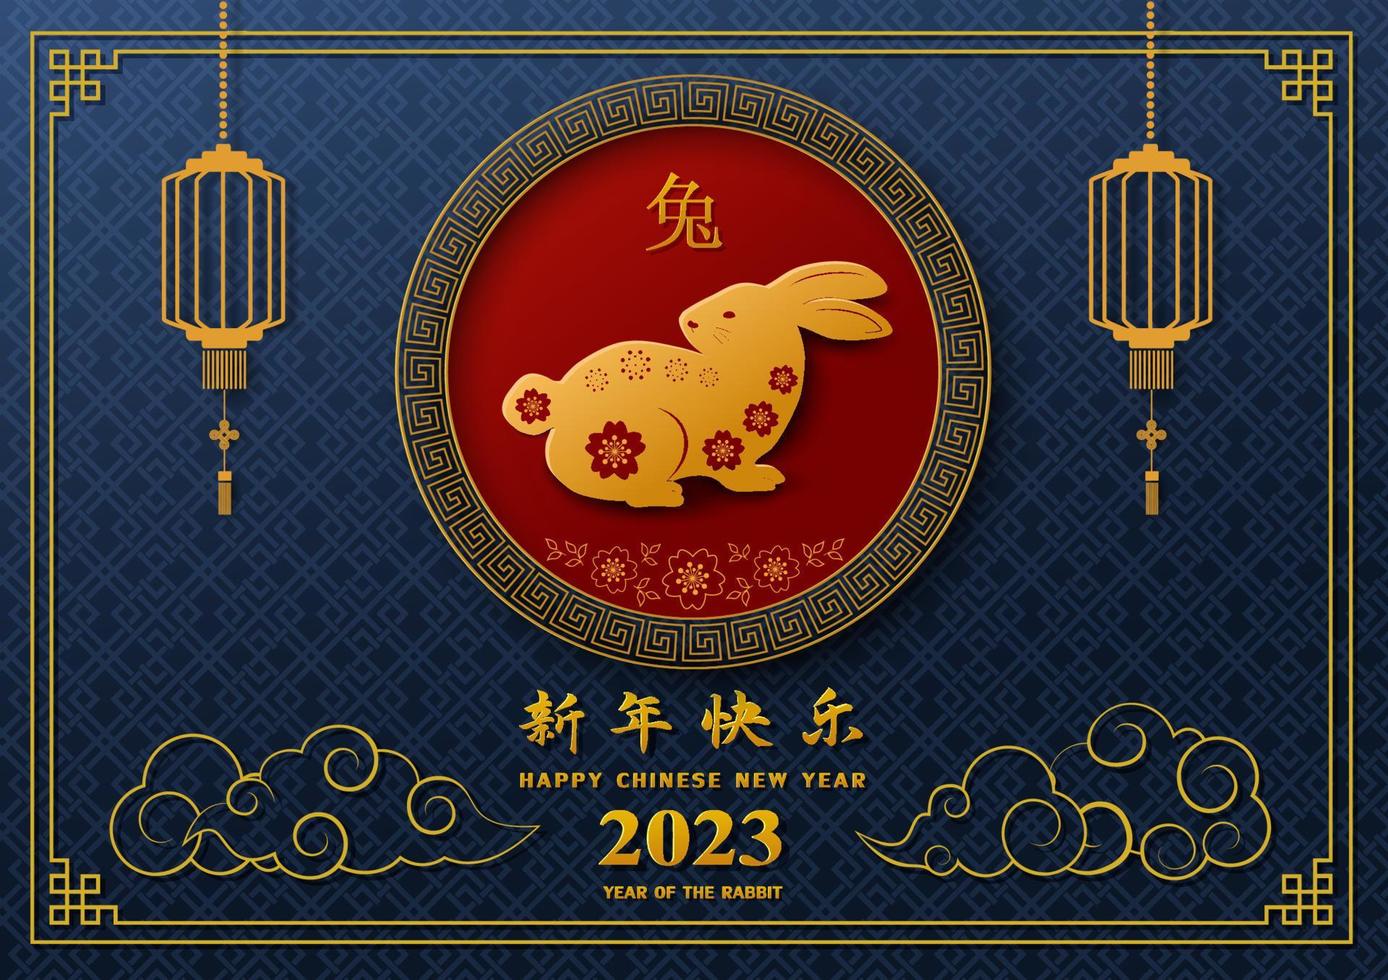 nouvel an chinois 2023, signe du zodiaque pour l'année du lapin sur fond bleu vecteur